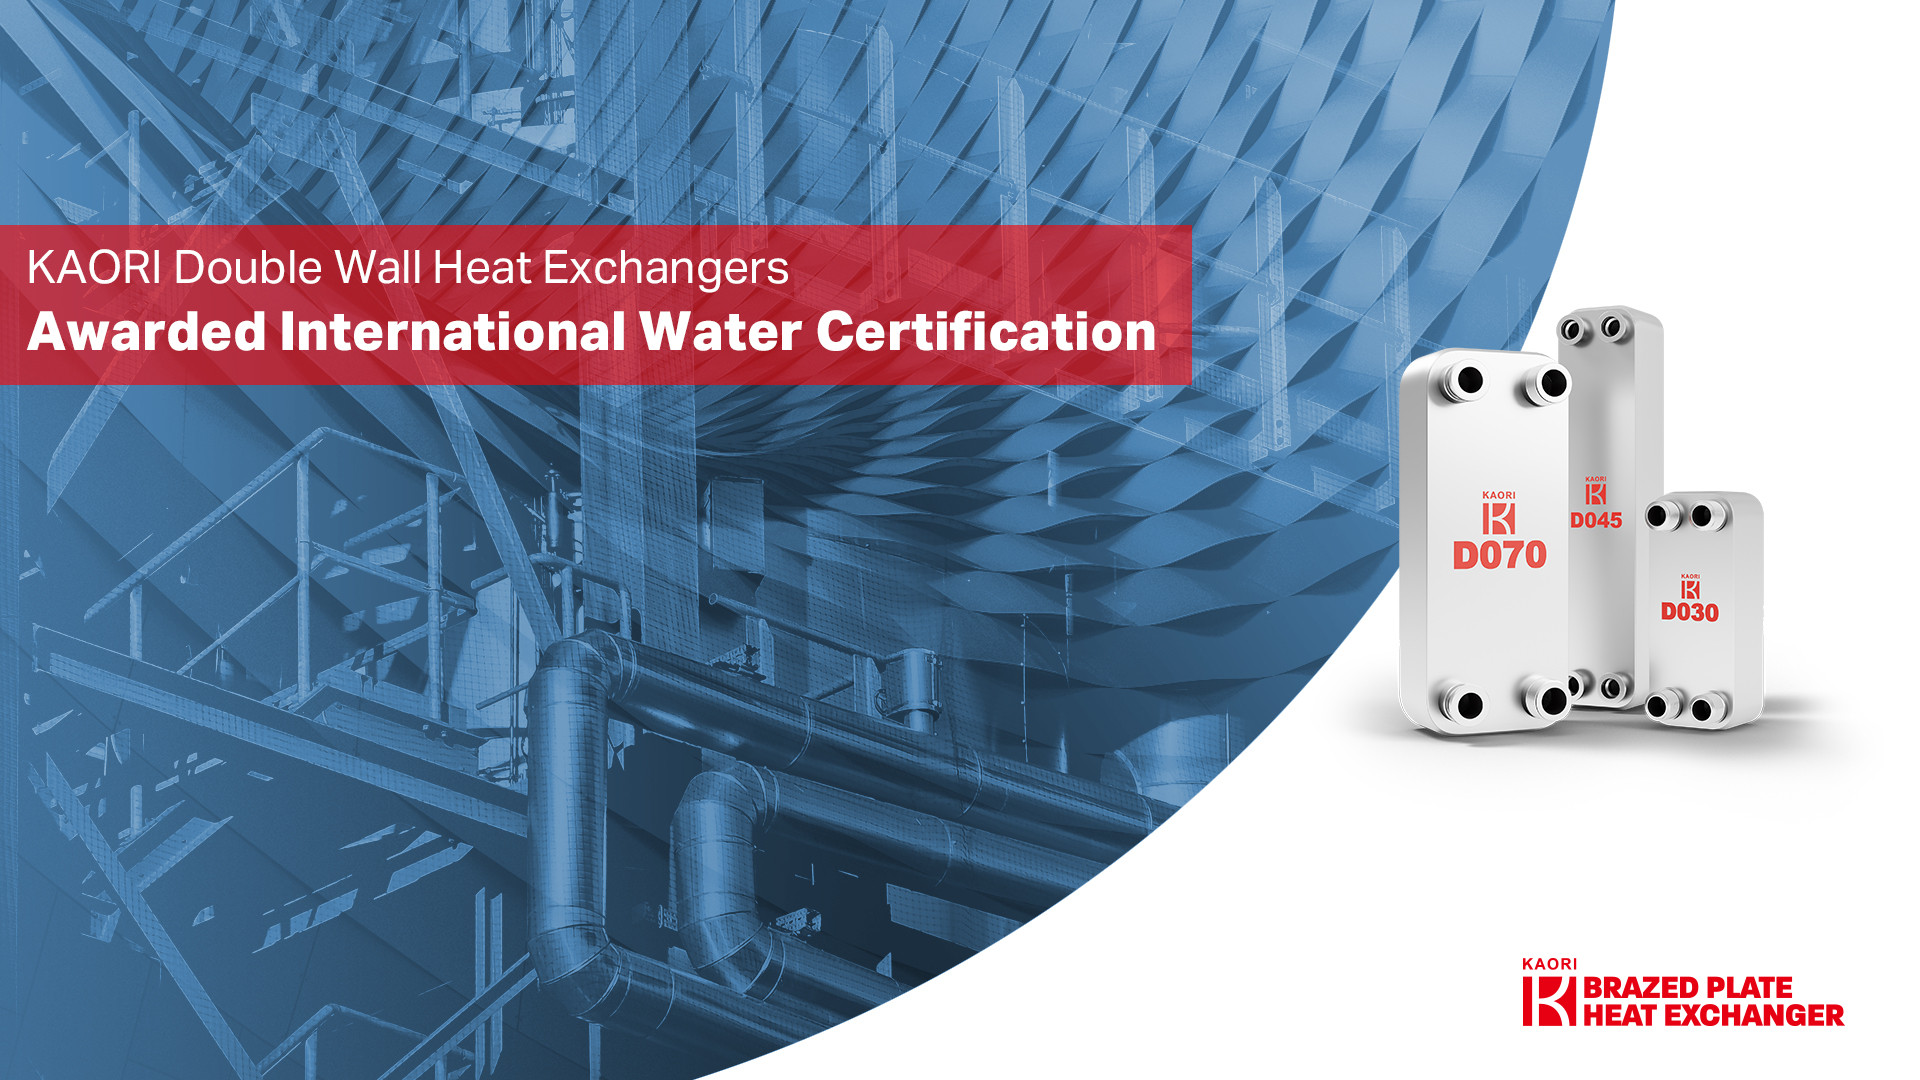  高力雙層板D系列榮獲國際水質認證 